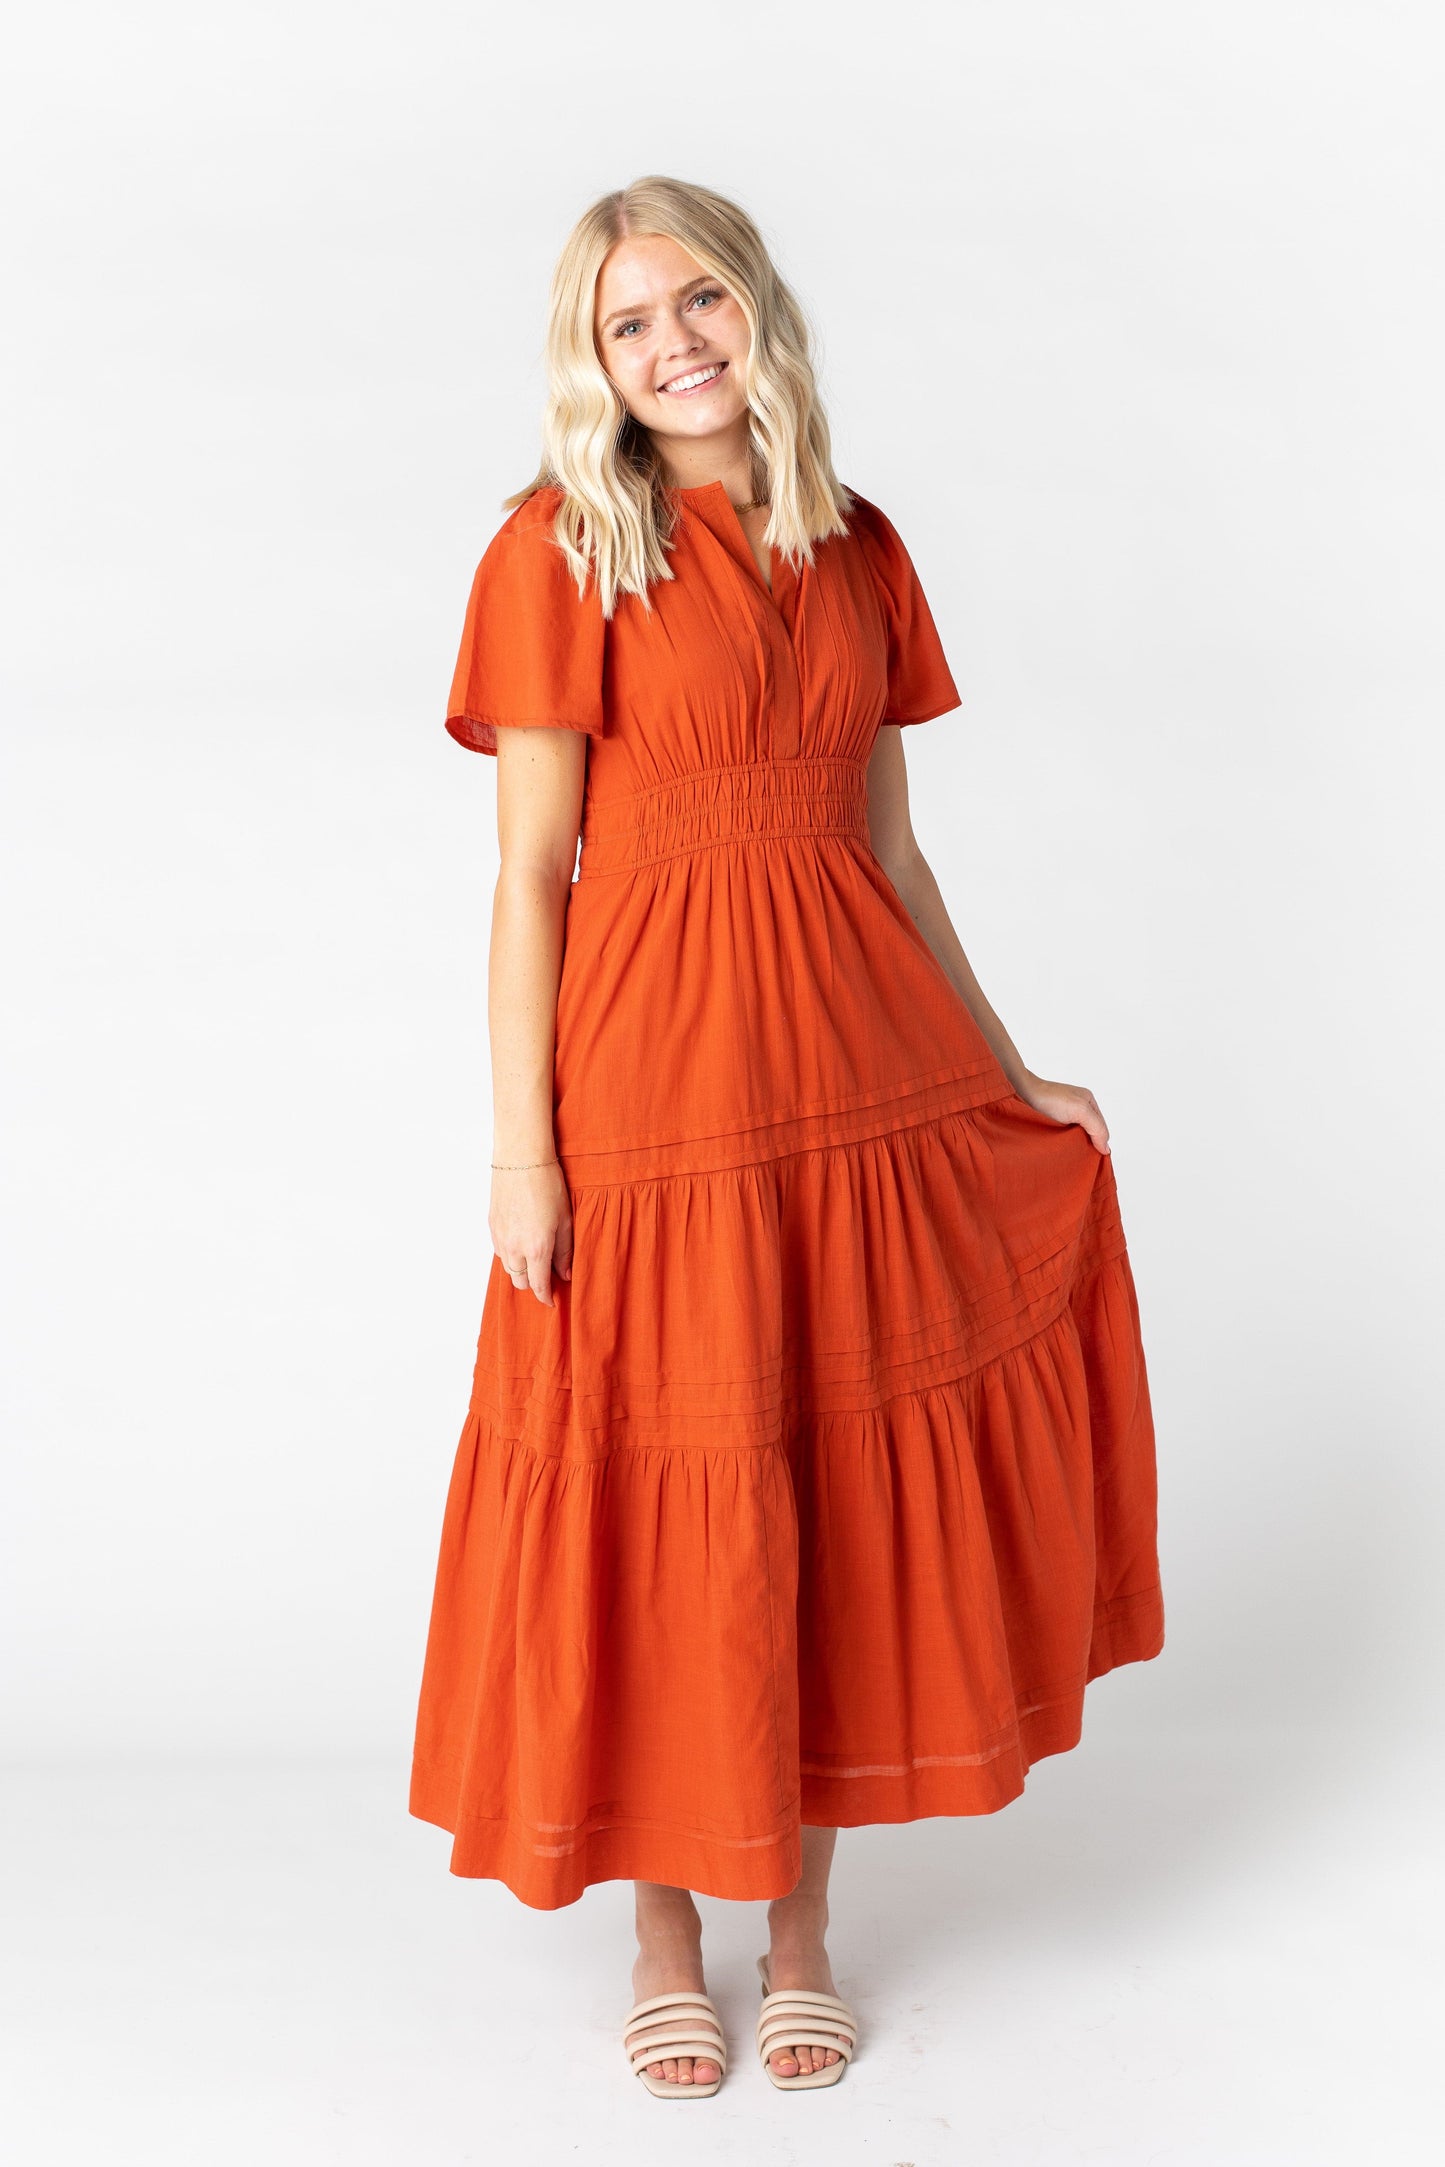 Citrus-Parkland Dress WOMEN'S DRESS Citrus 